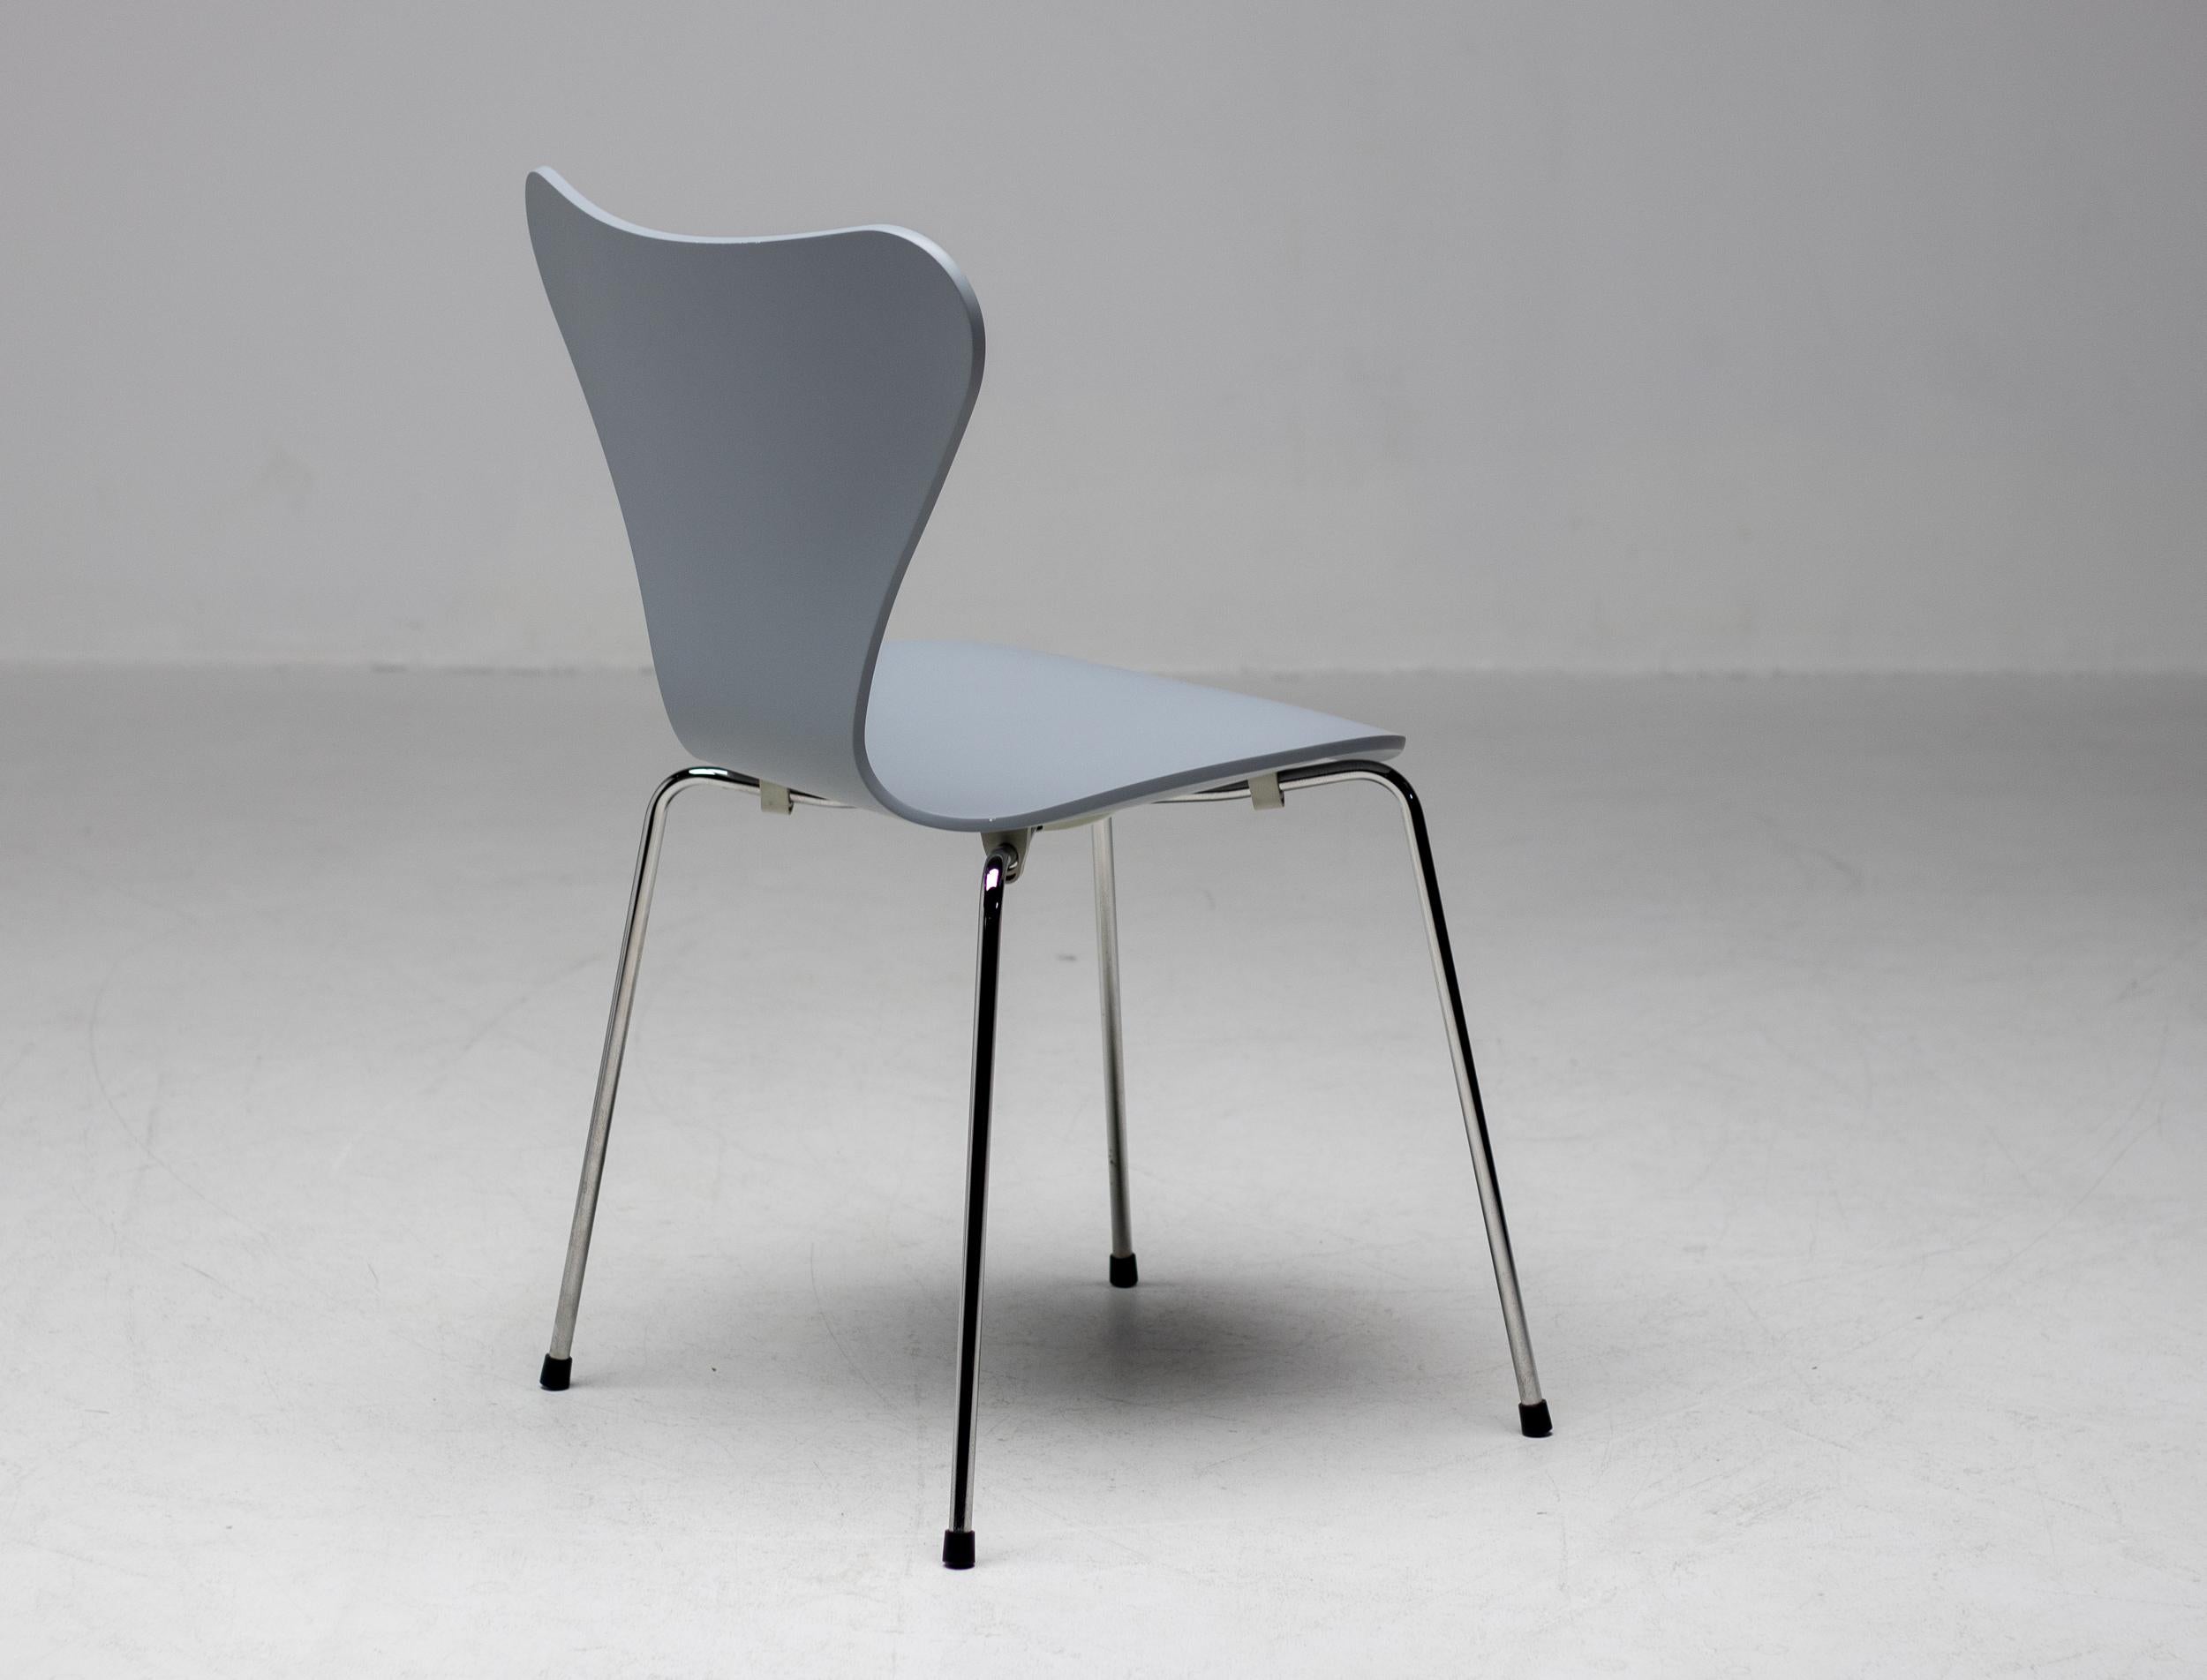 Édition limitée réalisée en 2009 de l'emblématique chaise de la série 7 d'Arne Jacobsen.
Pour rendre hommage à ce design, Fritz Hansen a choisi 7 designers de la jeune génération pour choisir leur couleur préférée. Maarten Baas est devenu l'un des